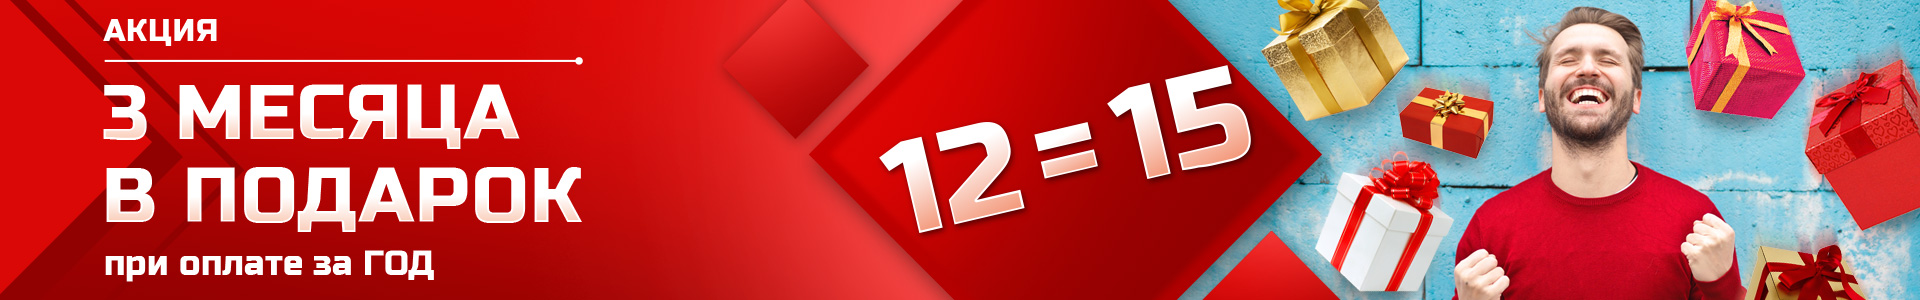 12=15